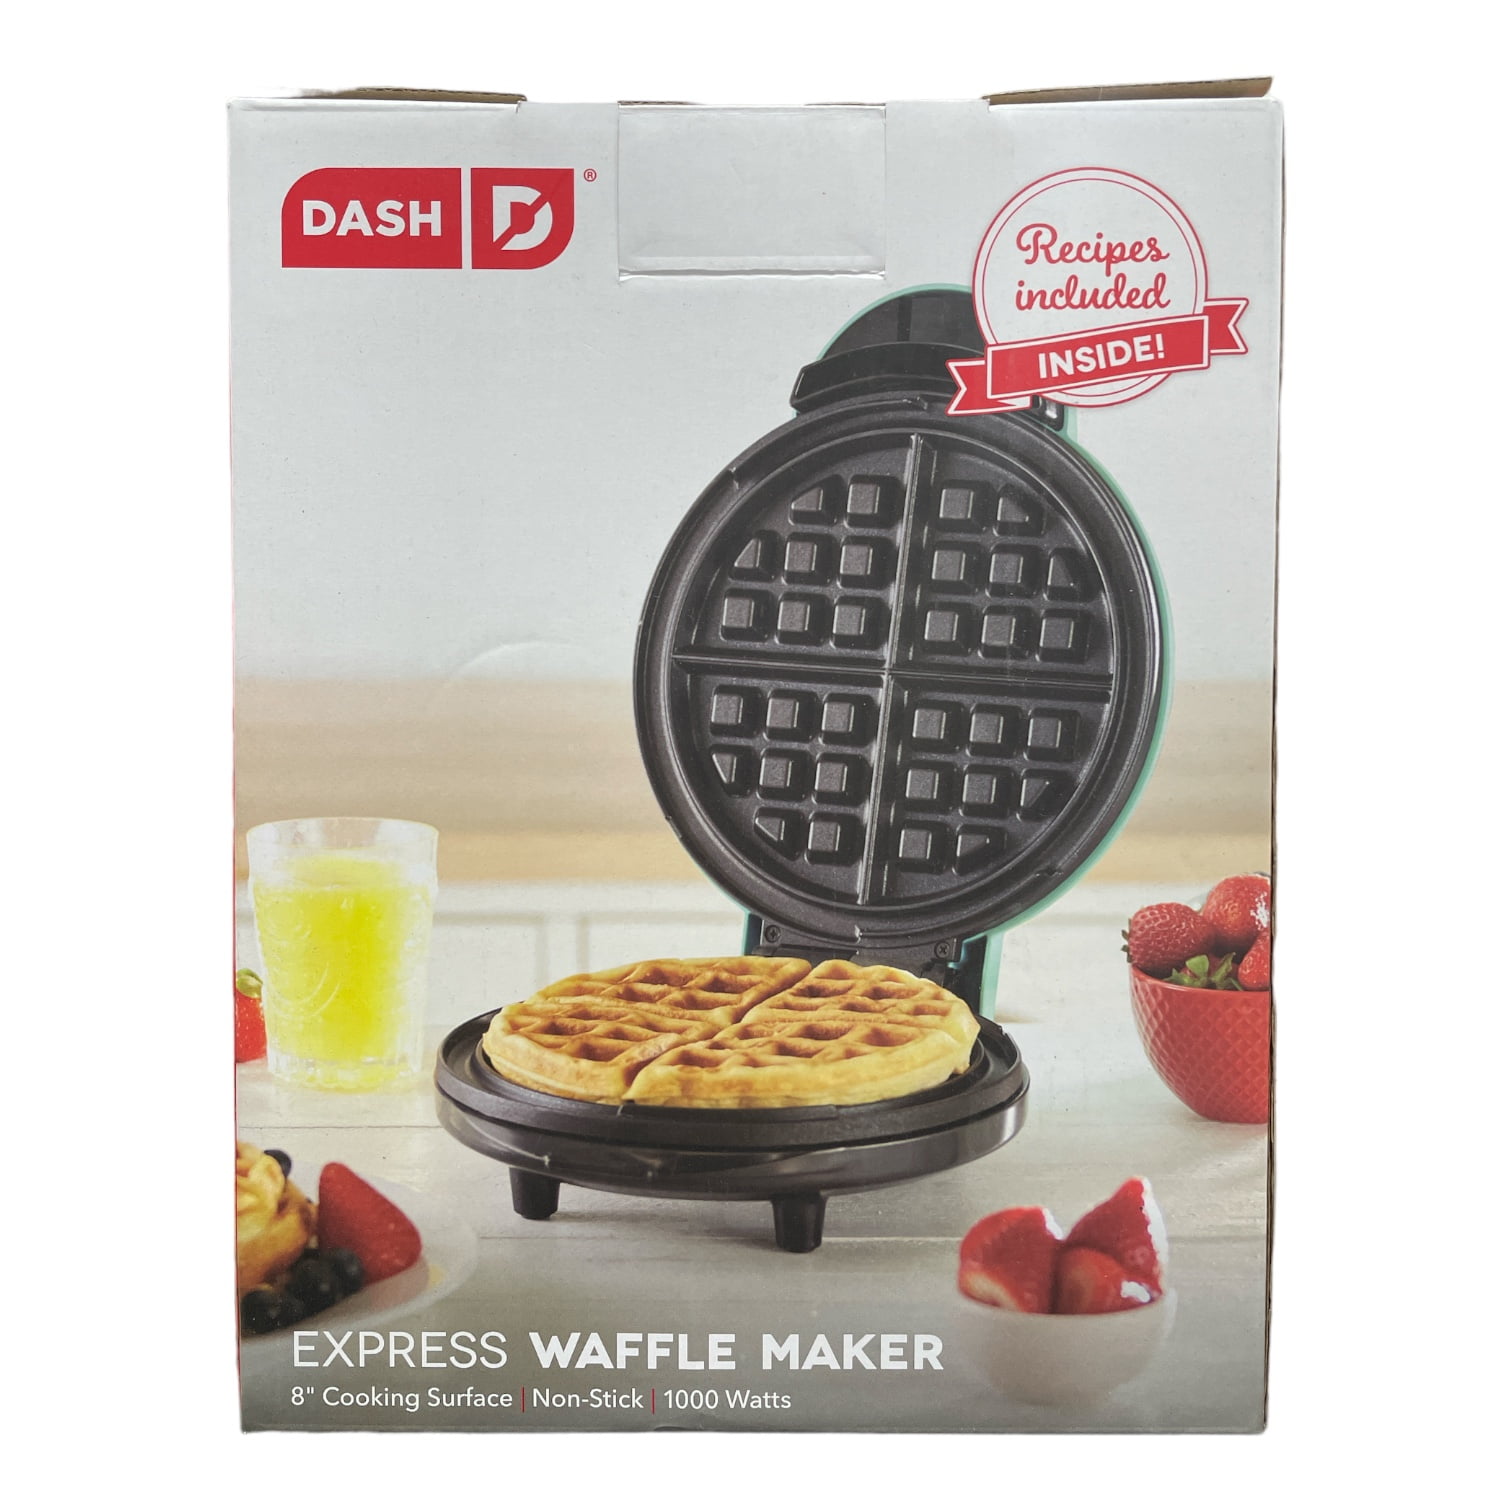 Dash No-Drip Nonstick Waffle Maker - Aqua